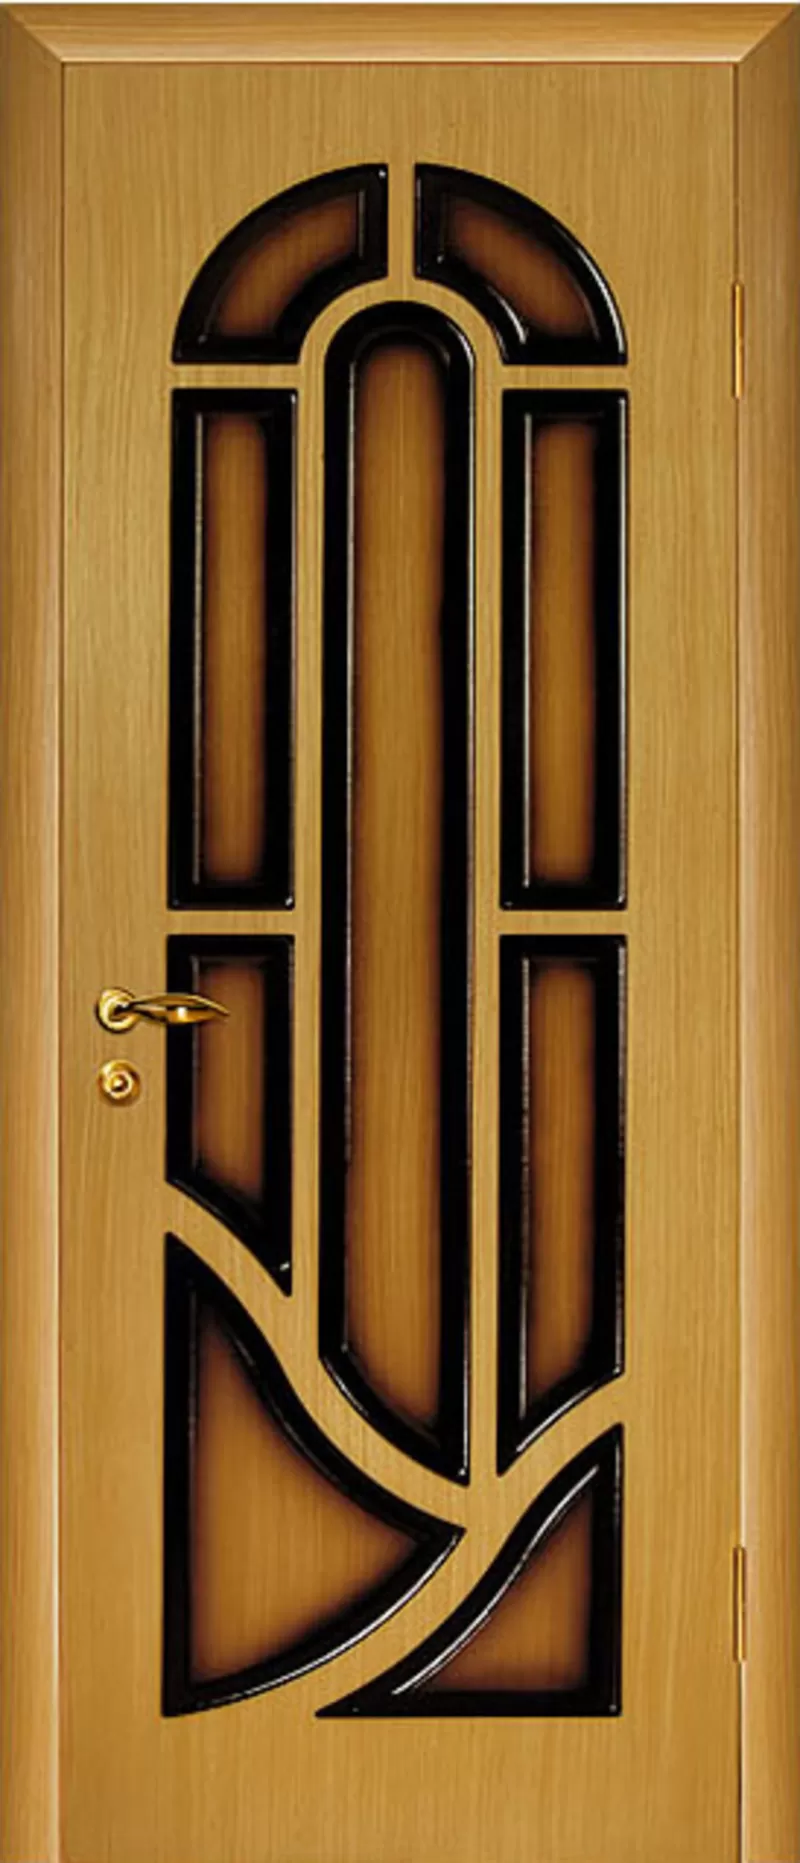 АКЦИЯ дверь шпонированая от 1645 т.р. в РАССРОЧКУ 0% на 3 месяца в бел. руб 2